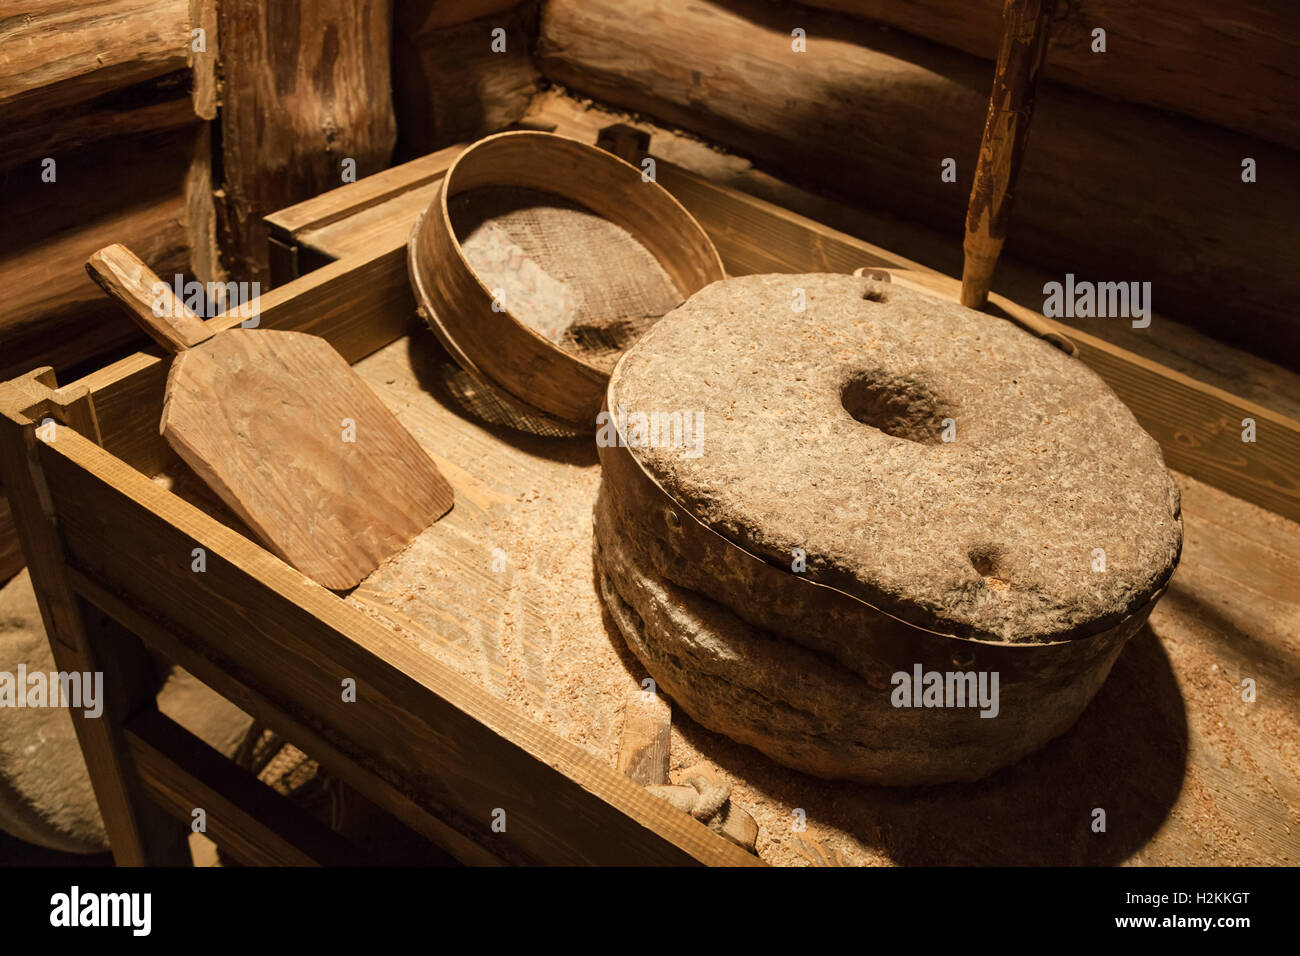 Vieilles meules pour moudre le grain, des outils agricoles d'époque Banque D'Images